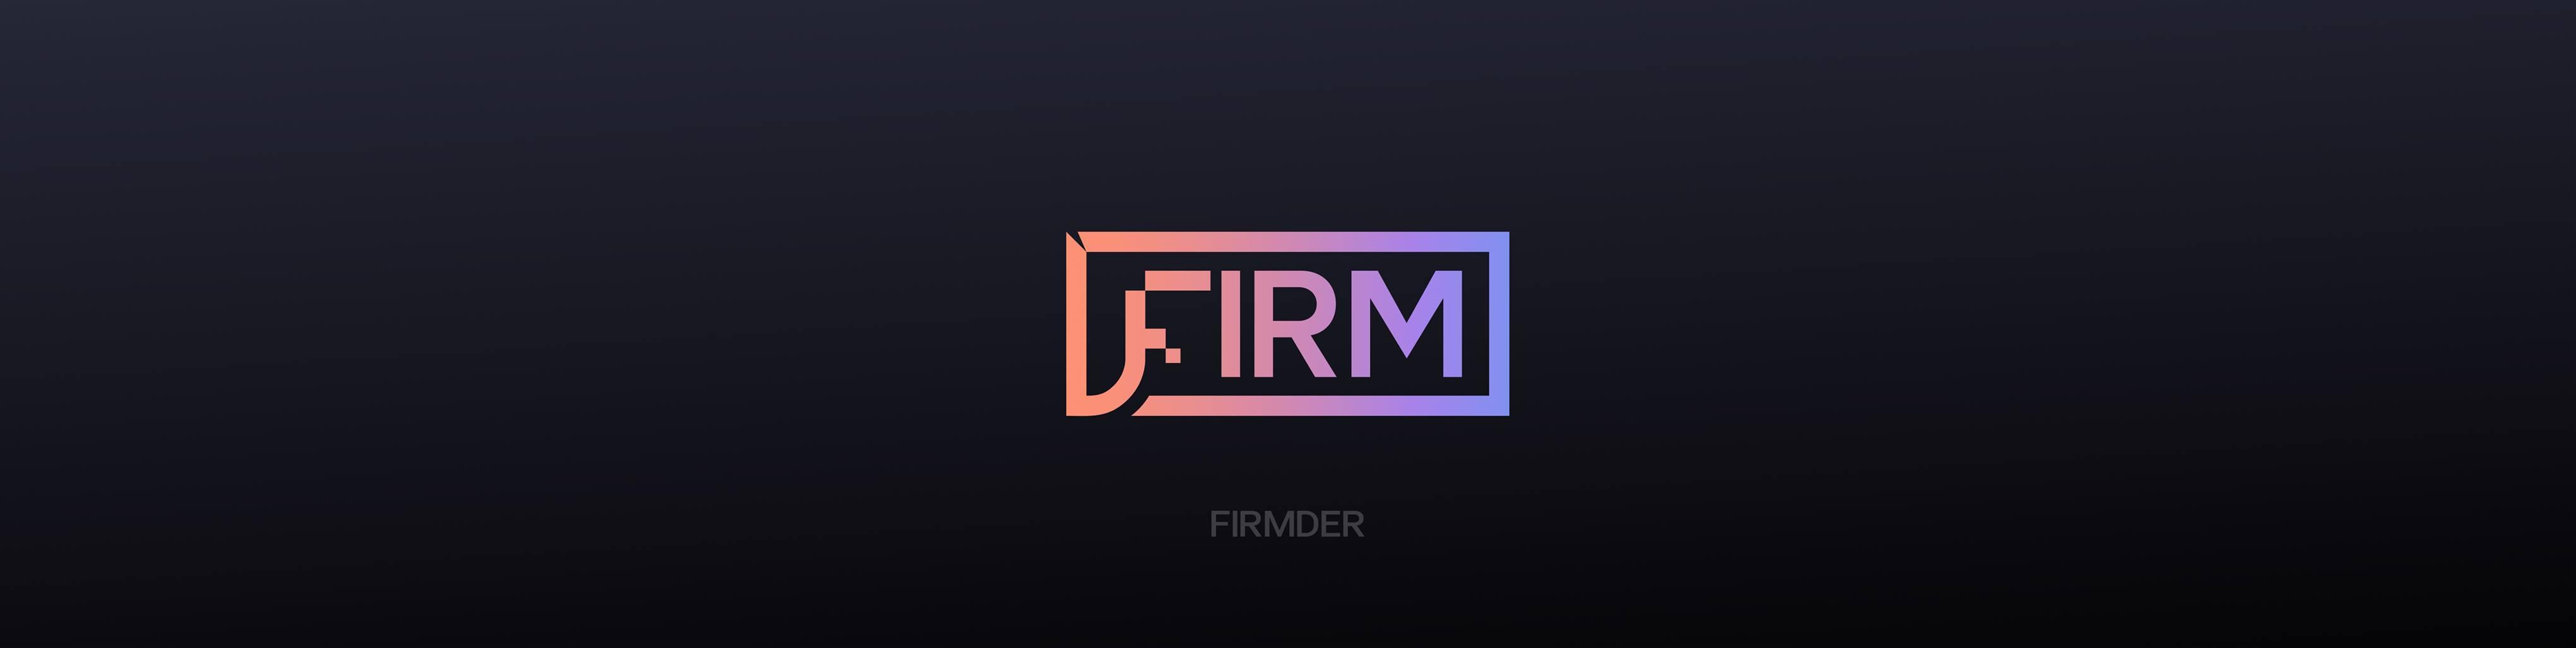 FIRMDER